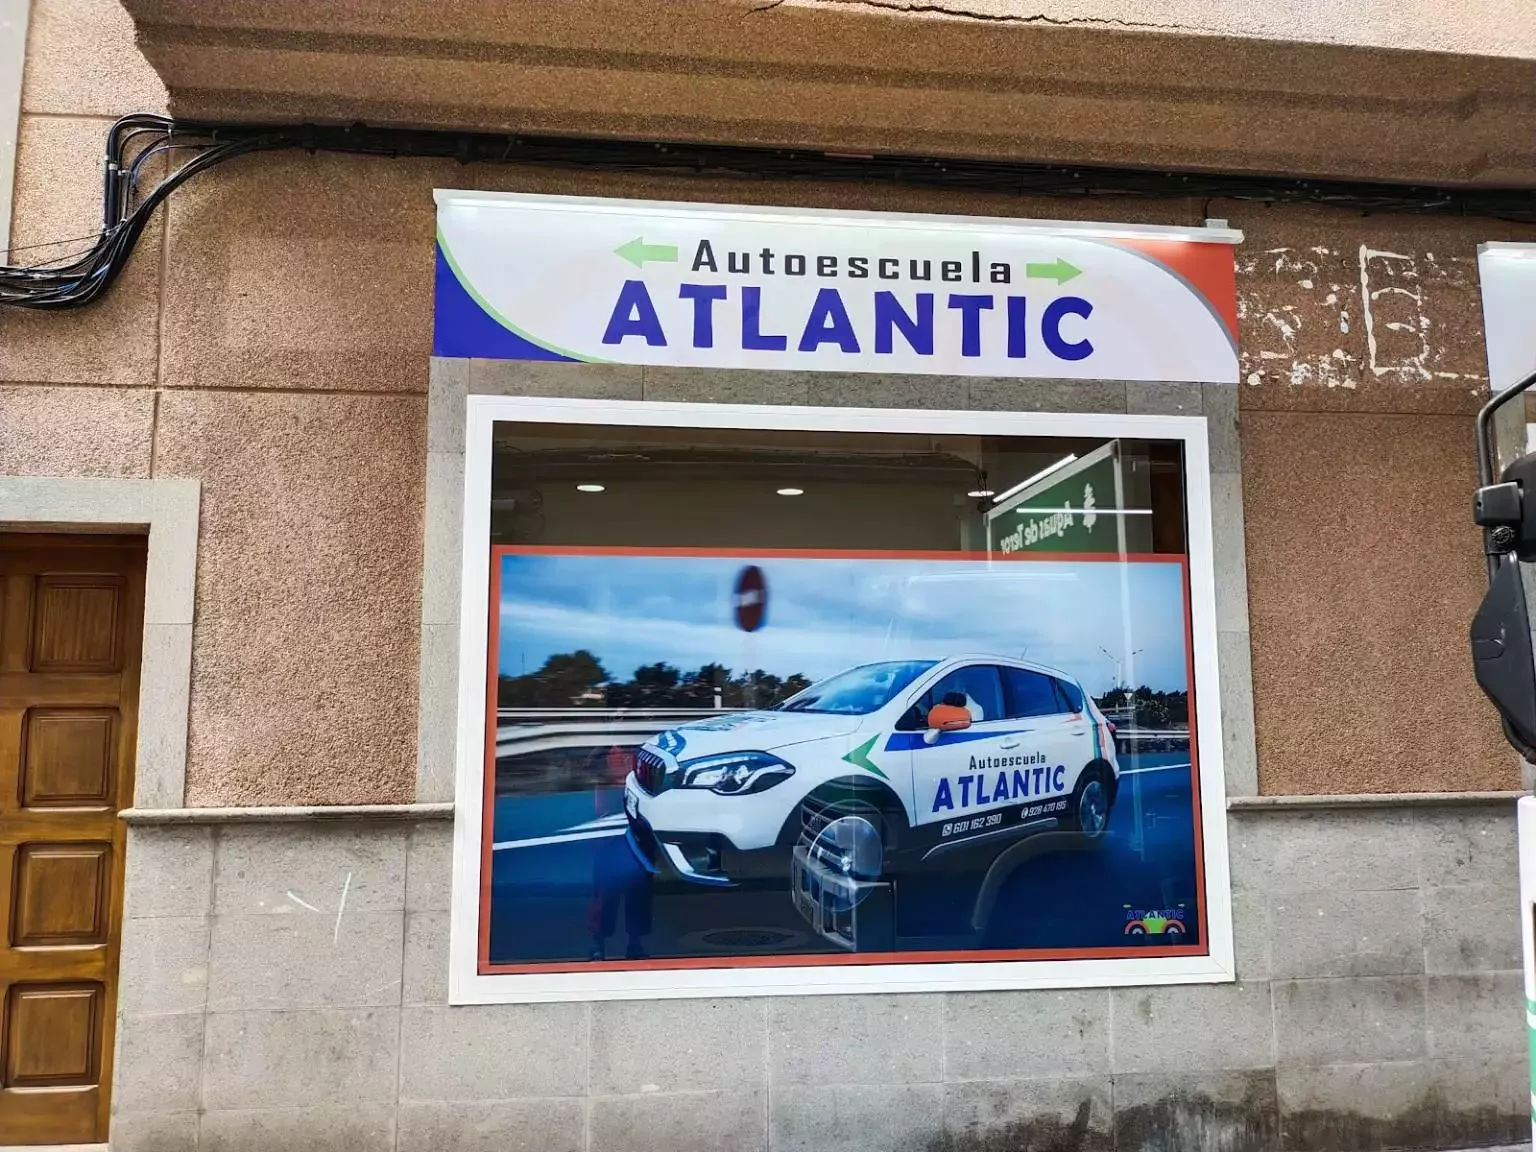 2. Autoescuela Atlantic LP